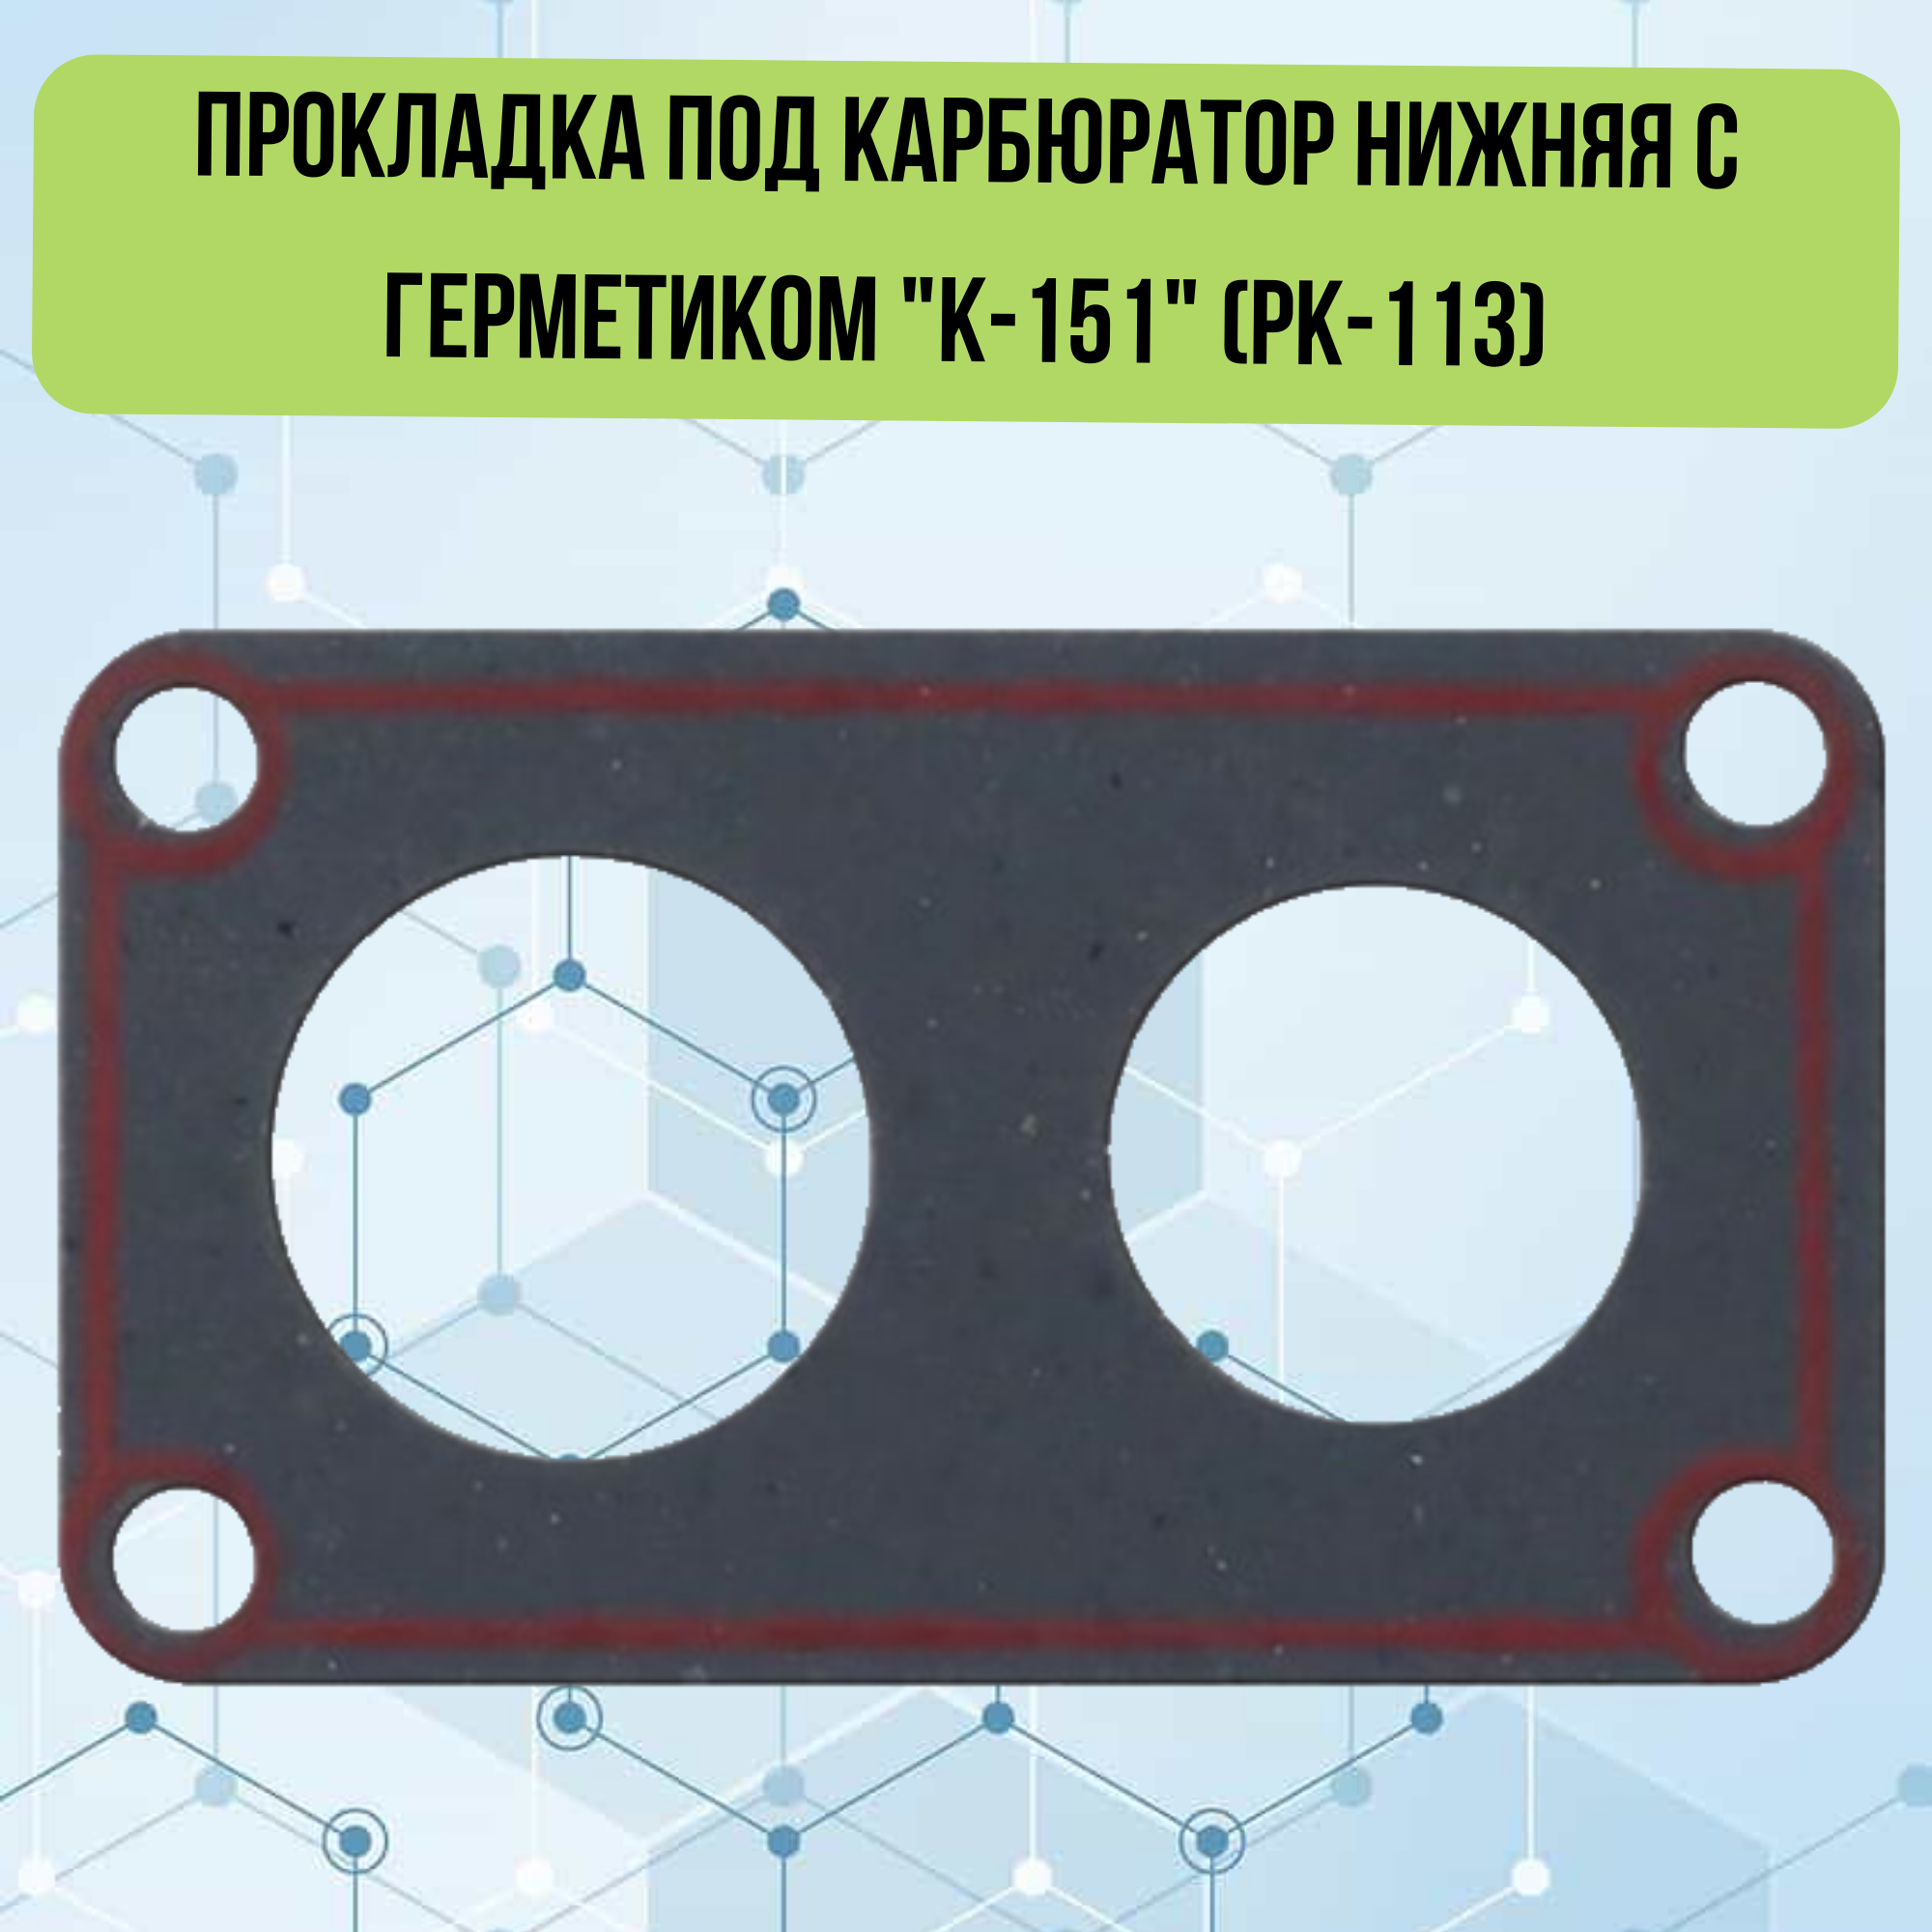 Прокладка под карбюратор нижняя с герметиком "К-151" (РК-113) для ГАЗ 24, 2410